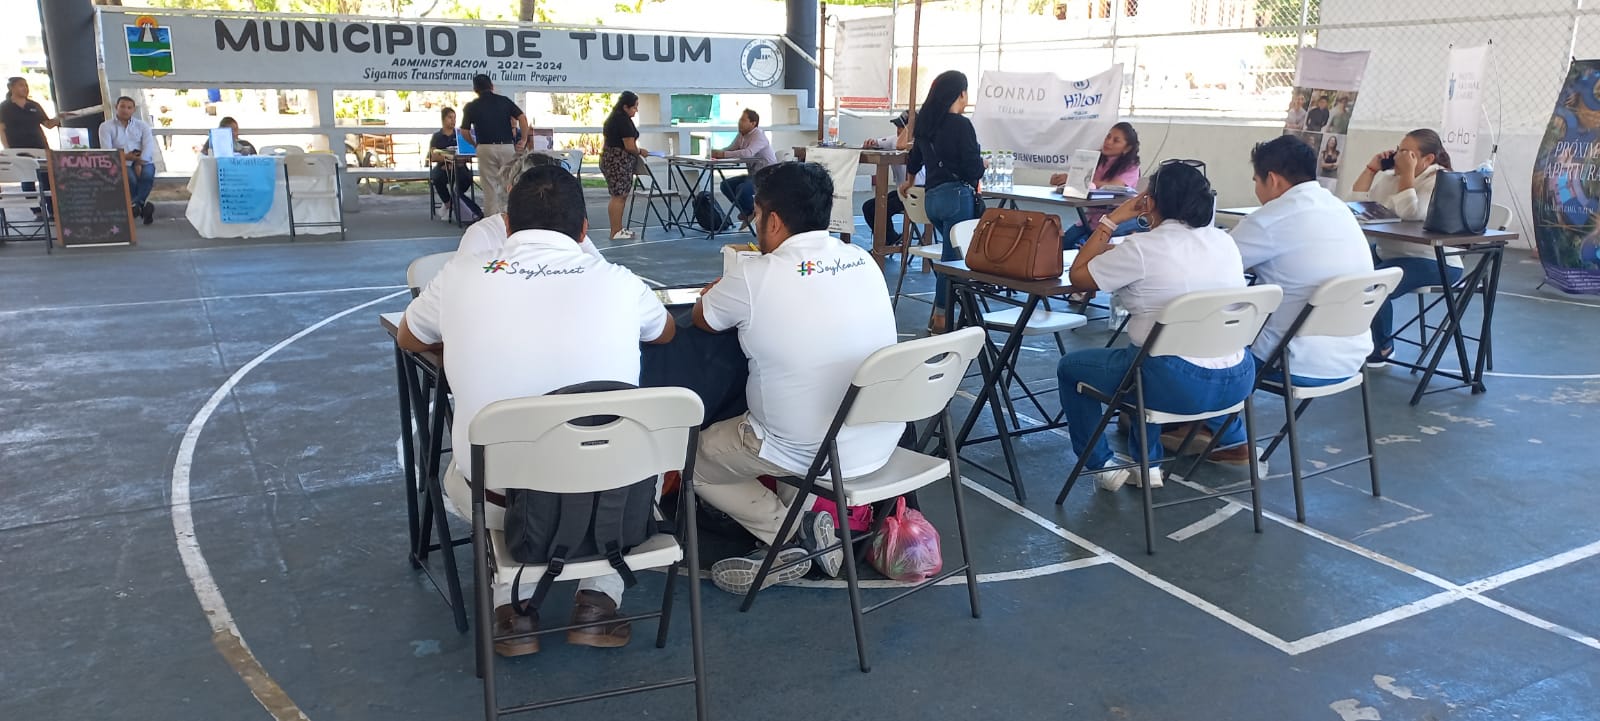 Ofertan 300 vacantes en feria de empleo de Tulum